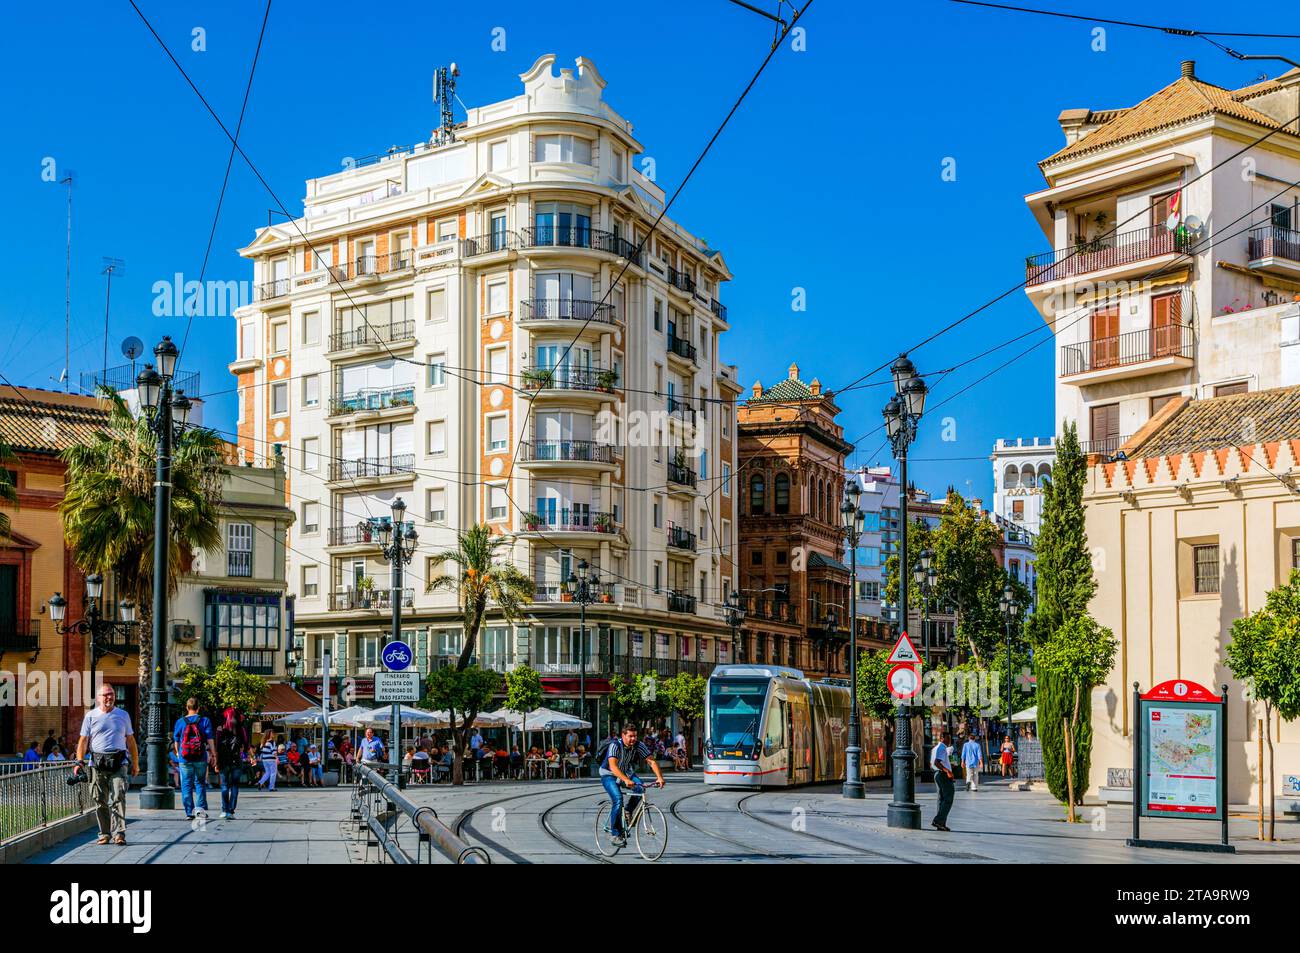 Puerta de Jerez, Seville, Andalusia, Spain Stock Photo